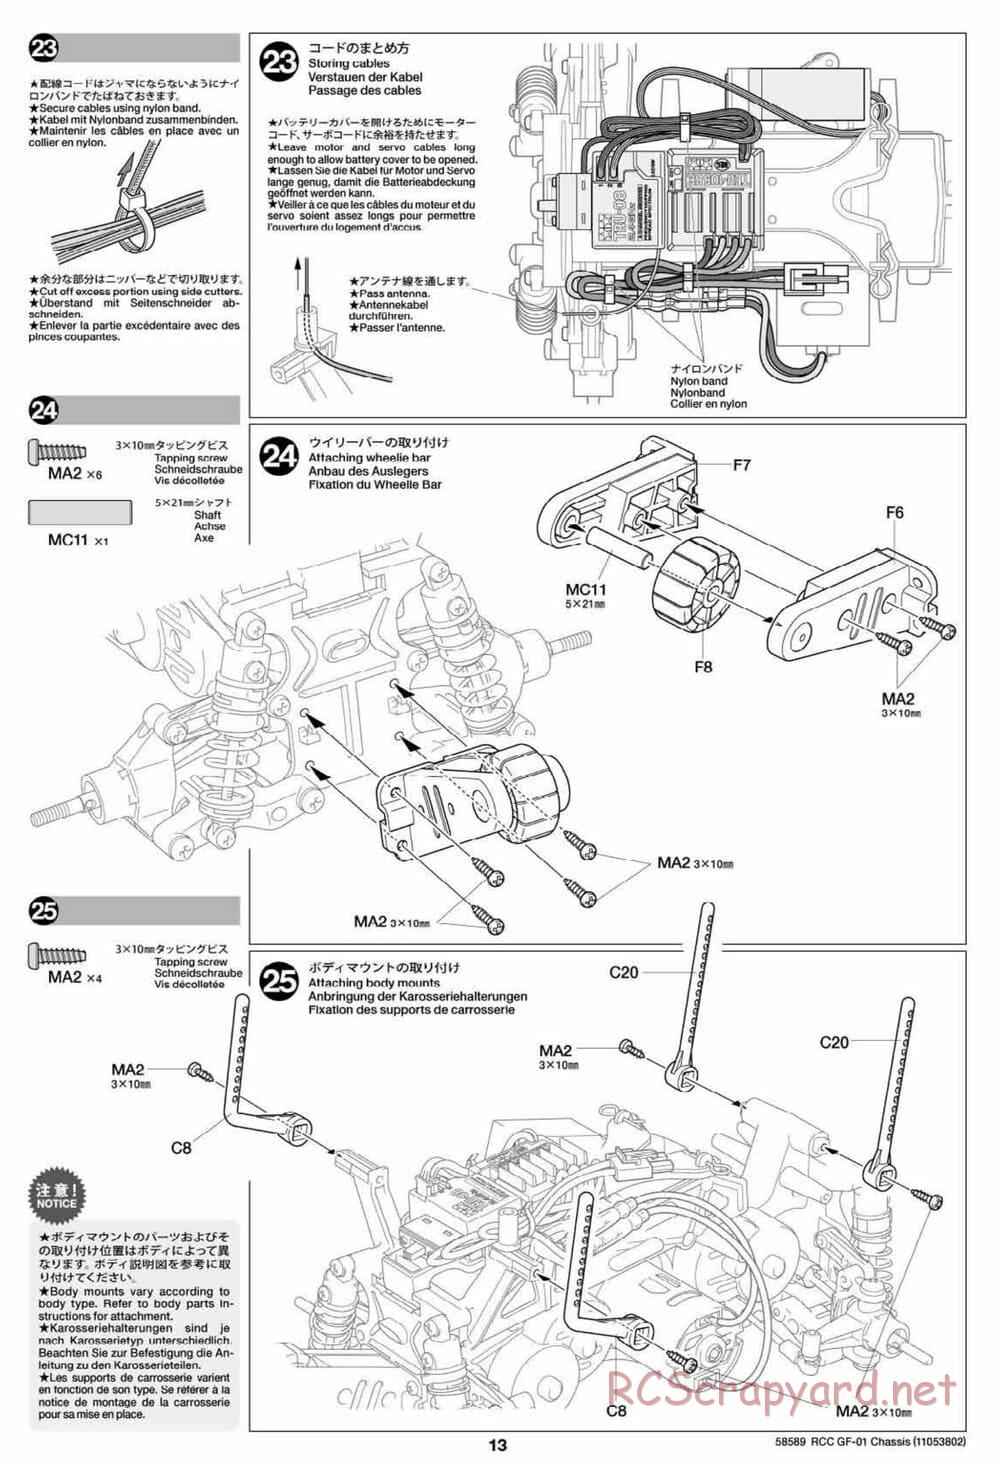 Tamiya - GF-01 Chassis - Manual - Page 13